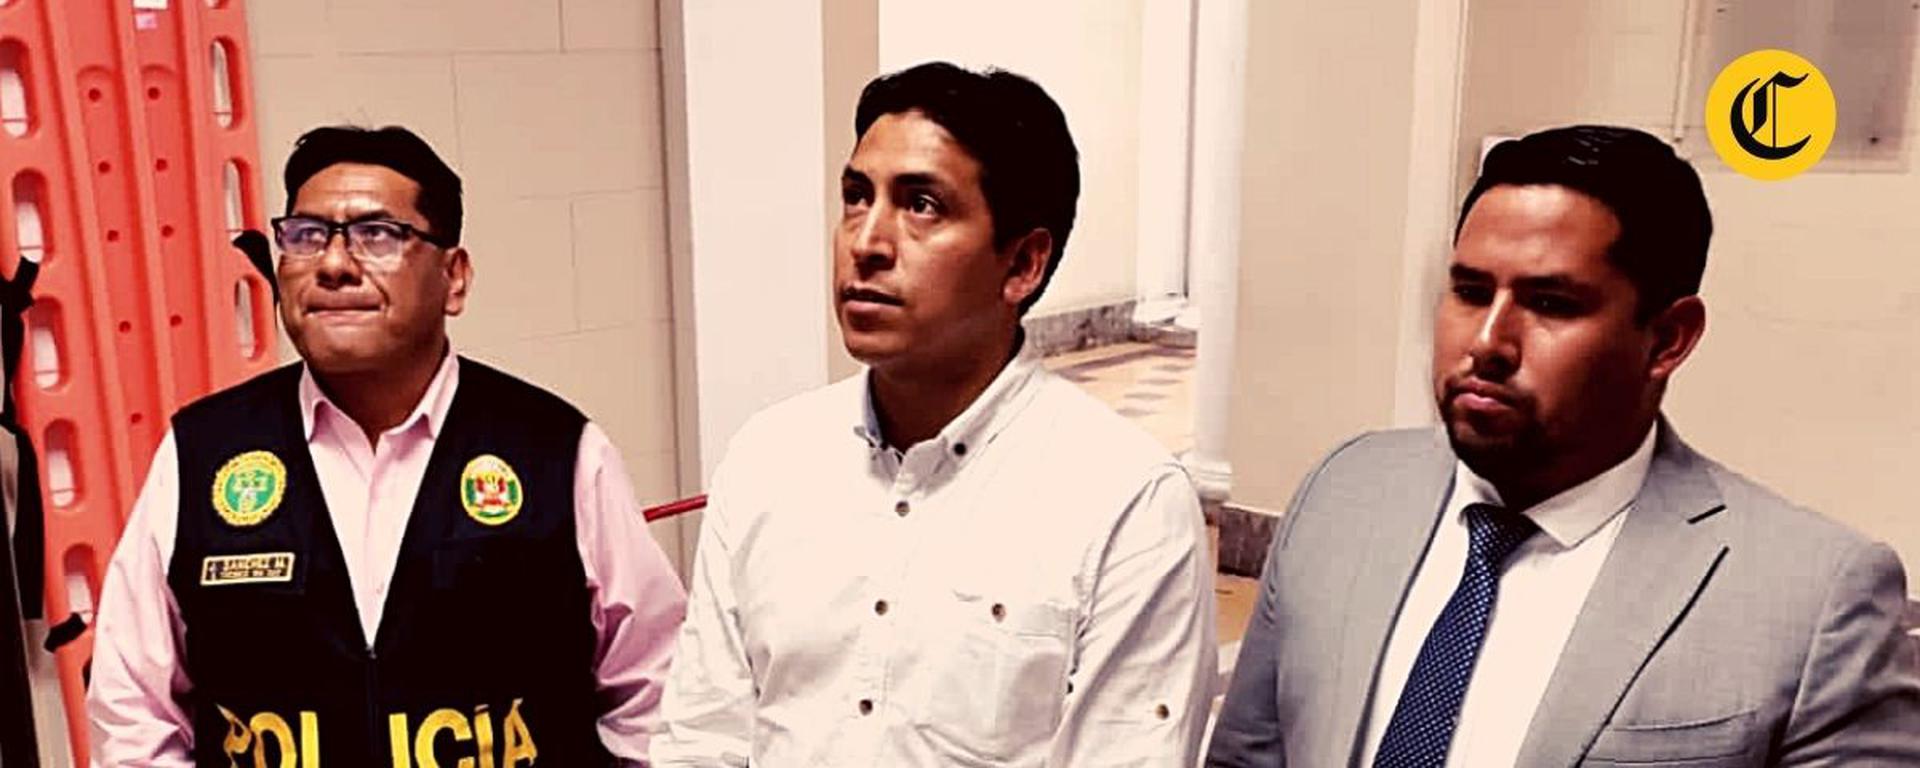 Excongresista de APP Freddy Díaz irá a juicio por violación: los detalles del proceso y las etapas que faltan